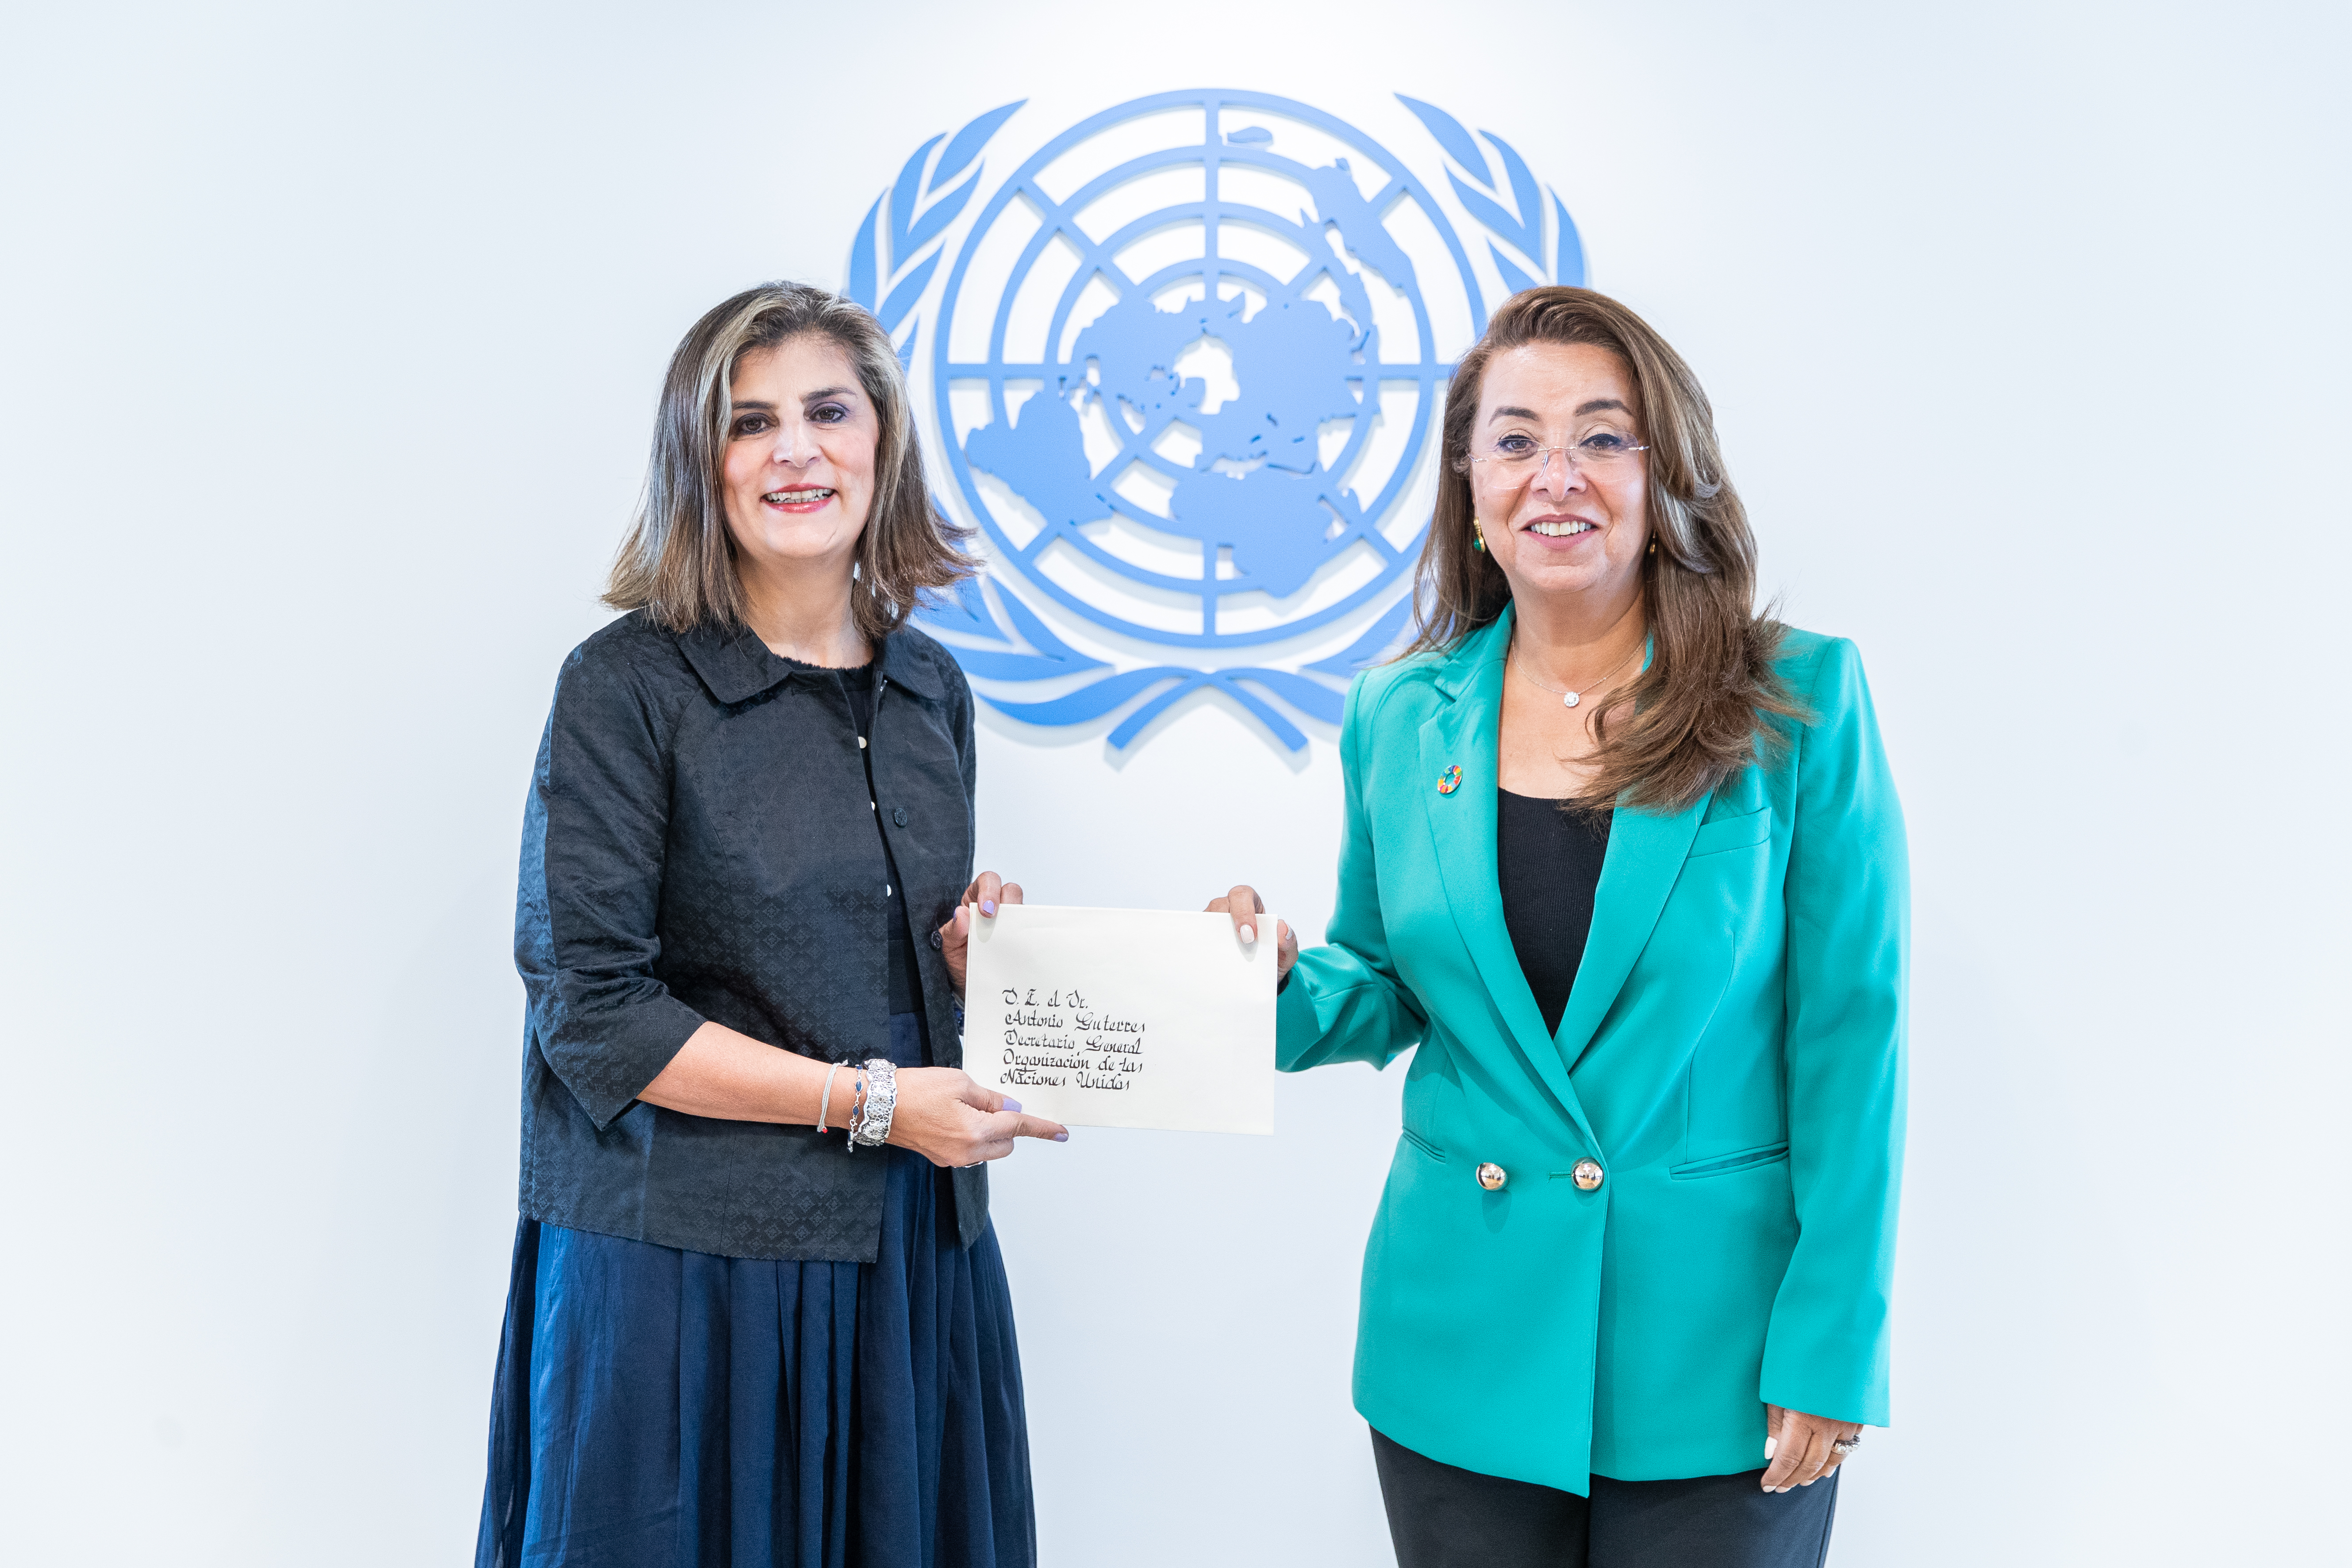 Embajadora Laura Gil presentó cartas credenciales ante la Directora General de la Oficina de las Naciones Unidas en Viena y Directora Ejecutiva de la Oficina de Naciones Unidas contra la Droga y el Delito